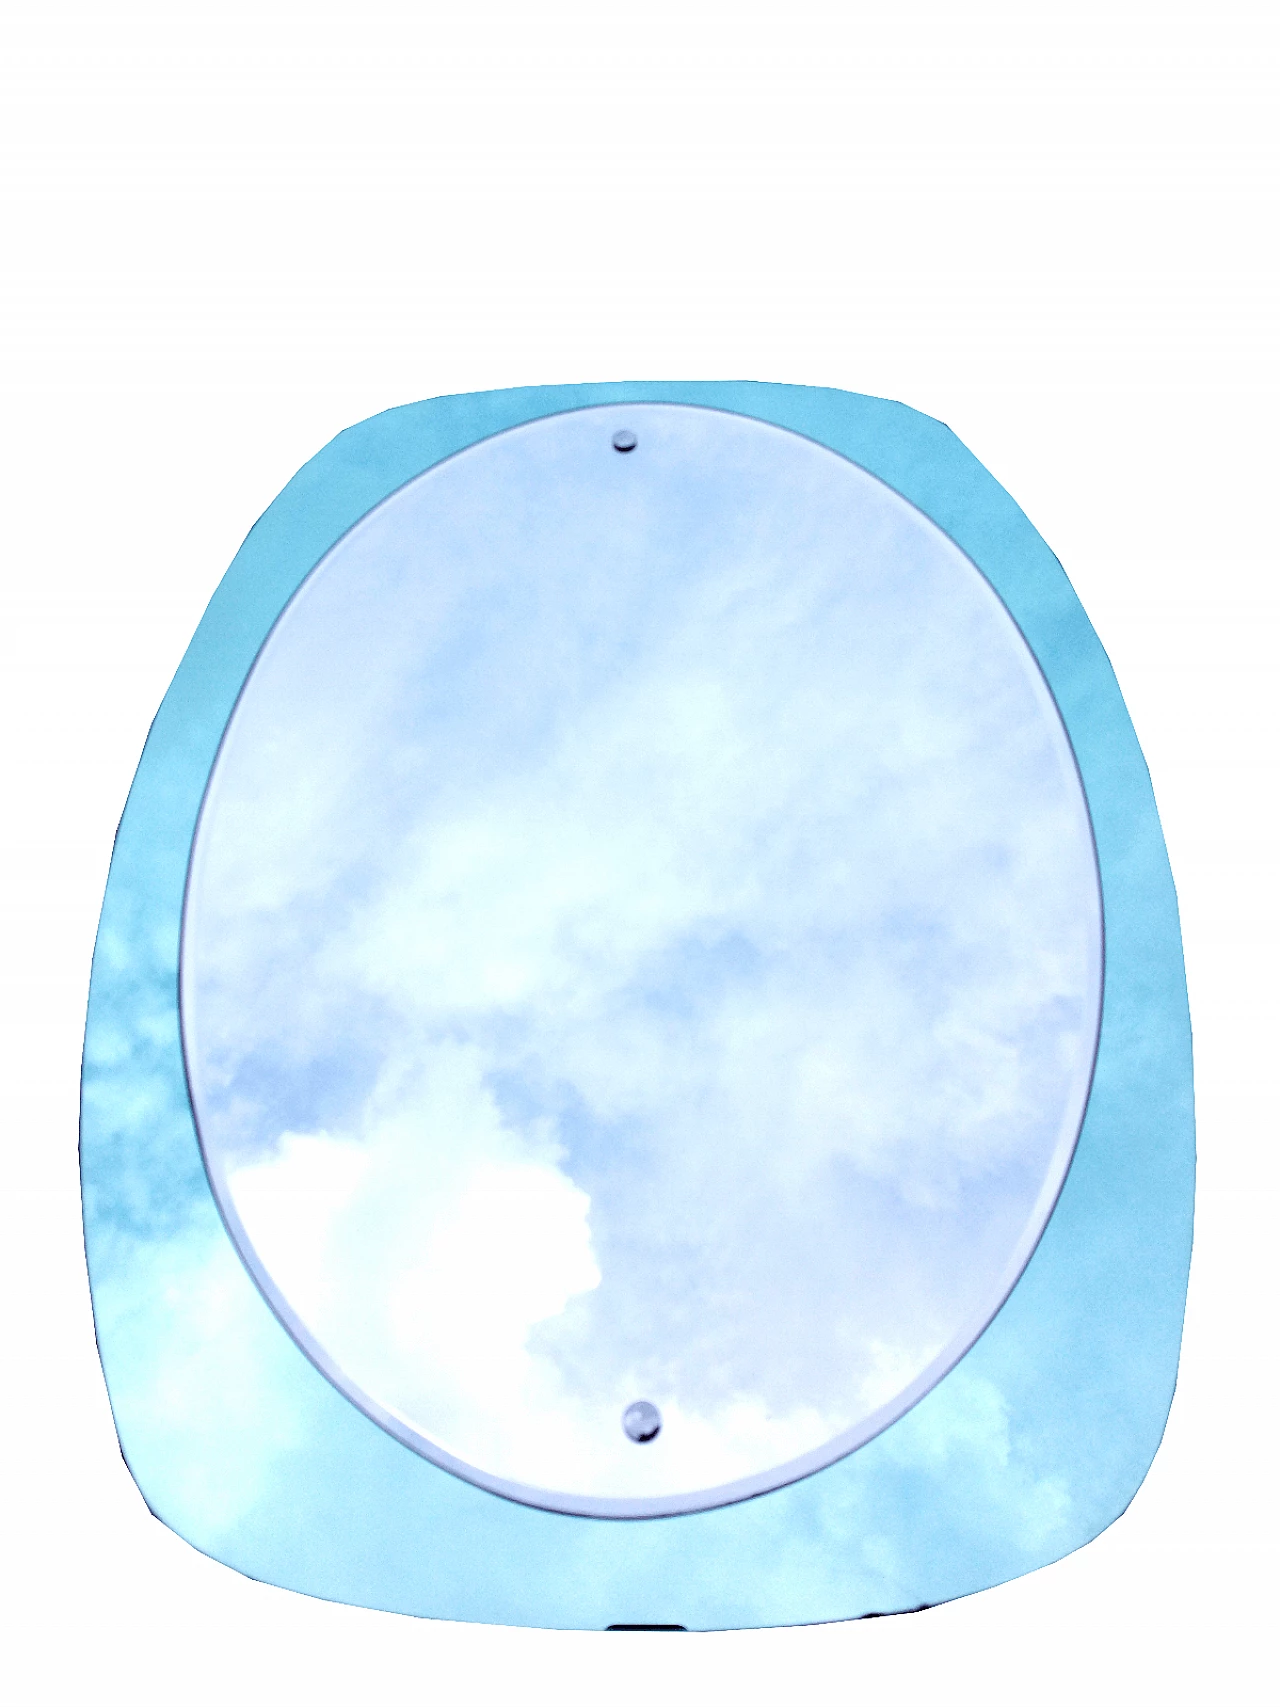 Specchio ovale con cornice azzurra, anni '60 2